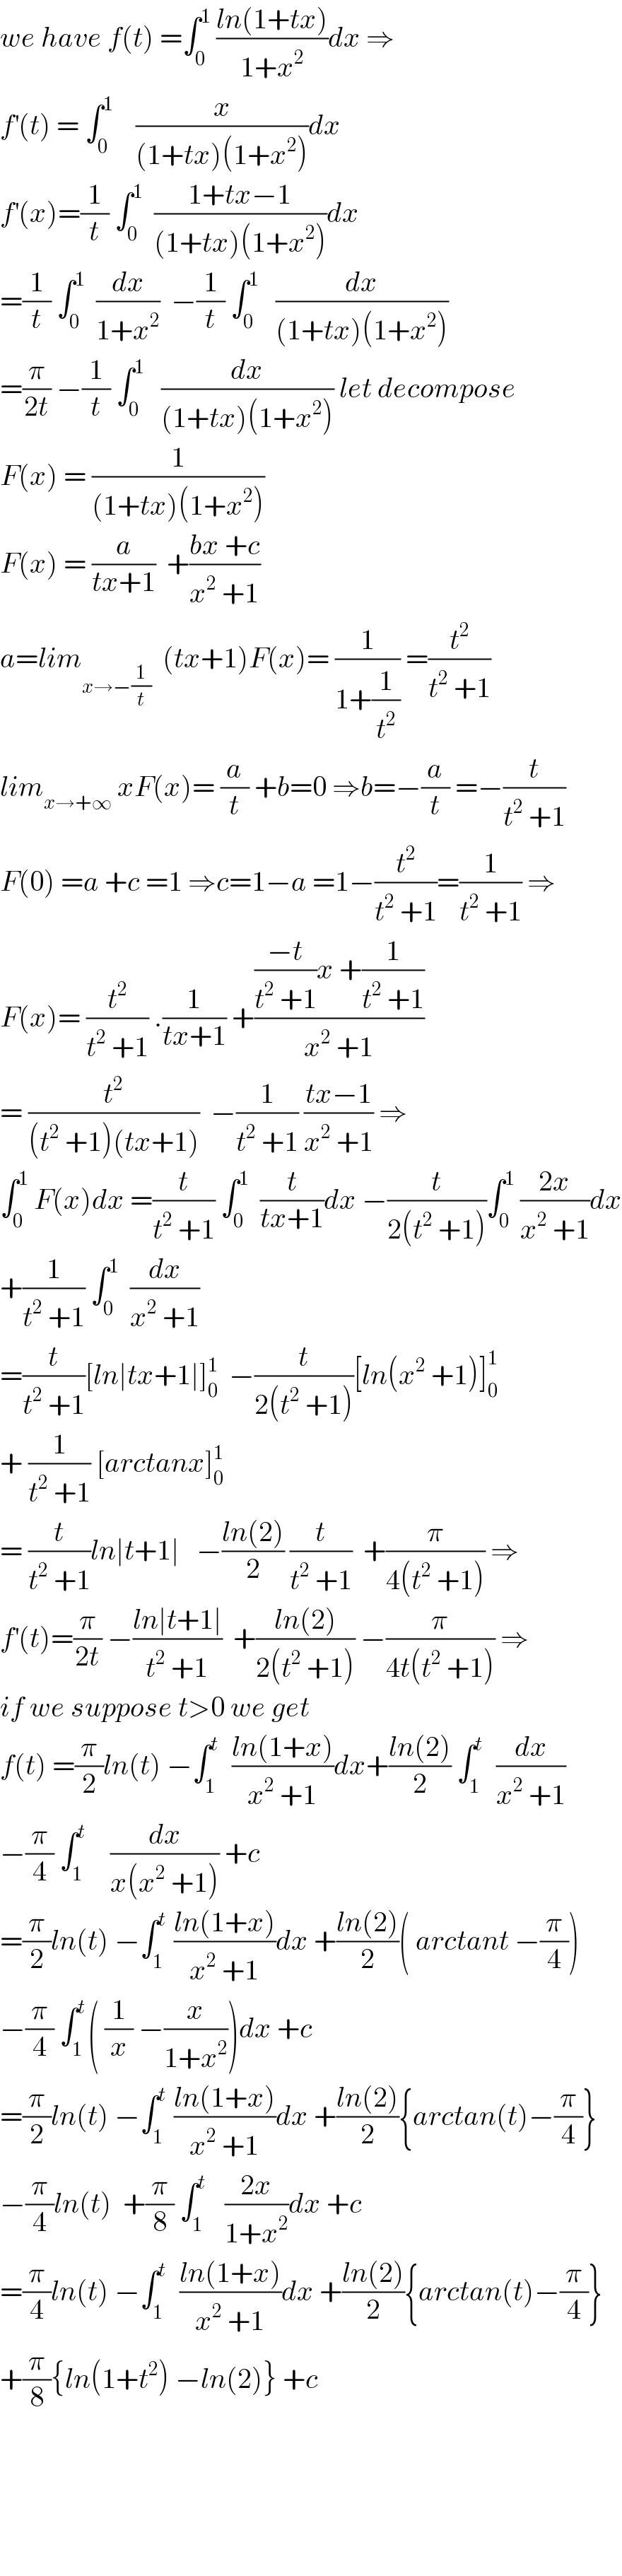 we have f(t) =∫_0 ^1  ((ln(1+tx))/(1+x^2 ))dx ⇒  f^′ (t) = ∫_0 ^1     (x/((1+tx)(1+x^2 )))dx   f^′ (x)=(1/t) ∫_0 ^1   ((1+tx−1)/((1+tx)(1+x^2 )))dx  =(1/t) ∫_0 ^1   (dx/(1+x^2 ))  −(1/t) ∫_0 ^1    (dx/((1+tx)(1+x^2 )))  =(π/(2t)) −(1/t) ∫_0 ^1    (dx/((1+tx)(1+x^2 ))) let decompose  F(x) = (1/((1+tx)(1+x^2 )))  F(x) = (a/(tx+1))  +((bx +c)/(x^2  +1))  a=lim_(x→−(1/t))   (tx+1)F(x)= (1/(1+(1/t^2 ))) =(t^2 /(t^2  +1))  lim_(x→+∞)  xF(x)= (a/t) +b=0 ⇒b=−(a/t) =−(t/(t^2  +1))  F(0) =a +c =1 ⇒c=1−a =1−(t^2 /(t^2  +1))=(1/(t^2  +1)) ⇒  F(x)= (t^2 /(t^2  +1)) .(1/(tx+1)) +((((−t)/(t^2  +1))x +(1/(t^2  +1)))/(x^2  +1))  = (t^2 /((t^2  +1)(tx+1)))  −(1/(t^2  +1)) ((tx−1)/(x^2  +1)) ⇒  ∫_0 ^1  F(x)dx =(t/(t^2  +1)) ∫_0 ^1   (t/(tx+1))dx −(t/(2(t^2  +1)))∫_0 ^1  ((2x)/(x^2  +1))dx  +(1/(t^2  +1)) ∫_0 ^1   (dx/(x^2  +1))  =(t/(t^2  +1))[ln∣tx+1∣]_0 ^1   −(t/(2(t^2  +1)))[ln(x^2  +1)]_0 ^1   + (1/(t^2  +1)) [arctanx]_0 ^1   = (t/(t^2  +1))ln∣t+1∣   −((ln(2))/2) (t/(t^2  +1))  +(π/(4(t^2  +1))) ⇒  f^′ (t)=(π/(2t)) −((ln∣t+1∣)/(t^2  +1))  +((ln(2))/(2(t^2  +1))) −(π/(4t(t^2  +1))) ⇒  if we suppose t>0 we get  f(t) =(π/2)ln(t) −∫_1 ^t   ((ln(1+x))/(x^2  +1))dx+((ln(2))/2) ∫_1 ^t   (dx/(x^2  +1))  −(π/4) ∫_1 ^t     (dx/(x(x^2  +1))) +c  =(π/2)ln(t) −∫_1 ^t  ((ln(1+x))/(x^2  +1))dx +((ln(2))/2)( arctant −(π/4))  −(π/4) ∫_1 ^t ( (1/x) −(x/(1+x^2 )))dx +c  =(π/2)ln(t) −∫_1 ^t  ((ln(1+x))/(x^2  +1))dx +((ln(2))/2){arctan(t)−(π/4)}  −(π/4)ln(t)  +(π/8) ∫_1 ^t    ((2x)/(1+x^2 ))dx +c  =(π/4)ln(t) −∫_1 ^t   ((ln(1+x))/(x^2  +1))dx +((ln(2))/2){arctan(t)−(π/4)}  +(π/8){ln(1+t^2 ) −ln(2)} +c          